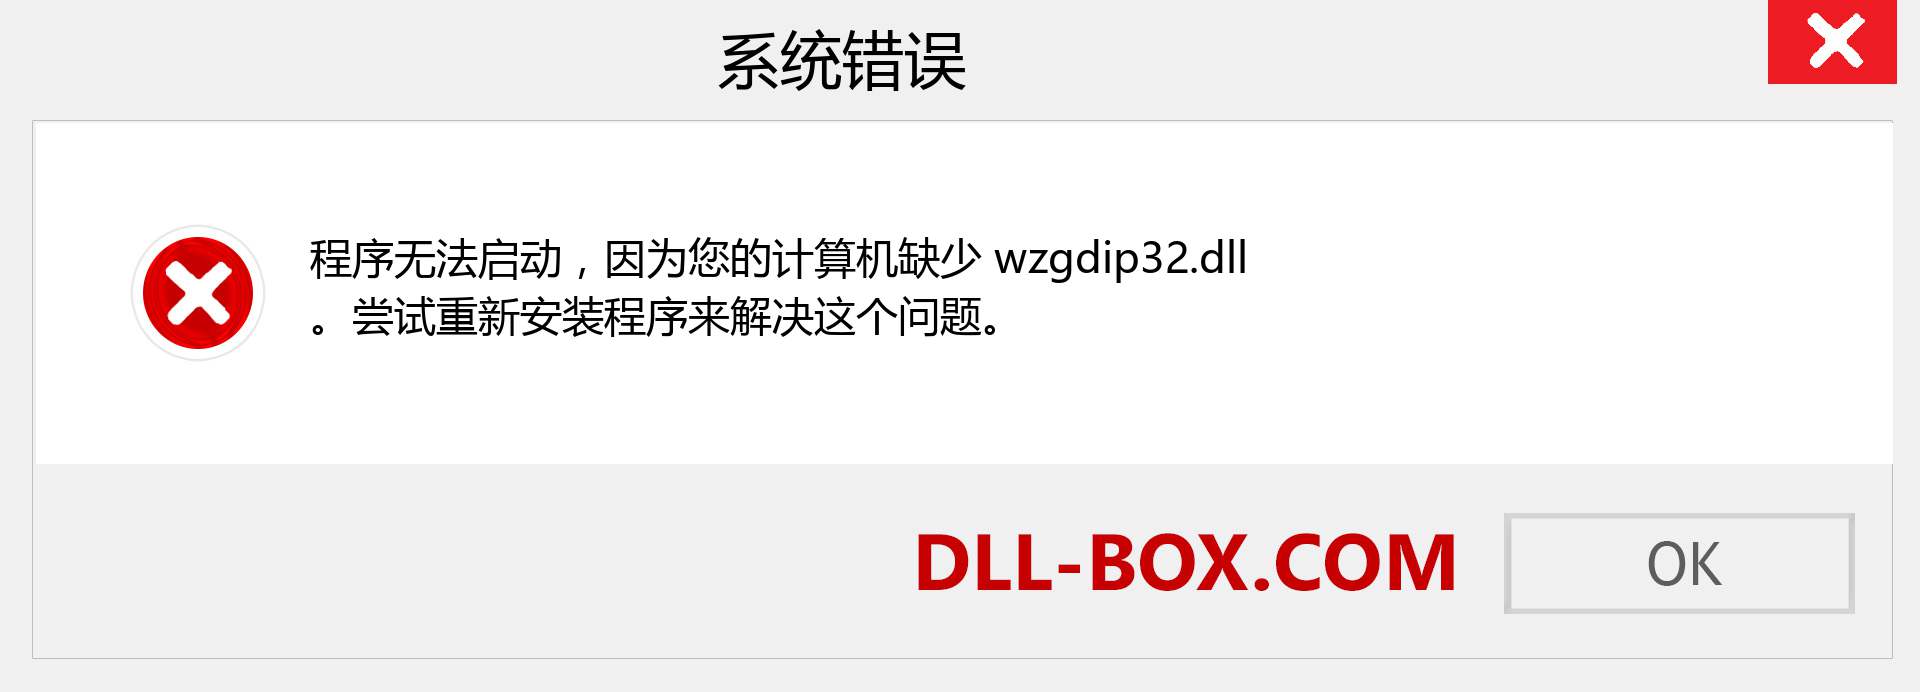 wzgdip32.dll 文件丢失？。 适用于 Windows 7、8、10 的下载 - 修复 Windows、照片、图像上的 wzgdip32 dll 丢失错误